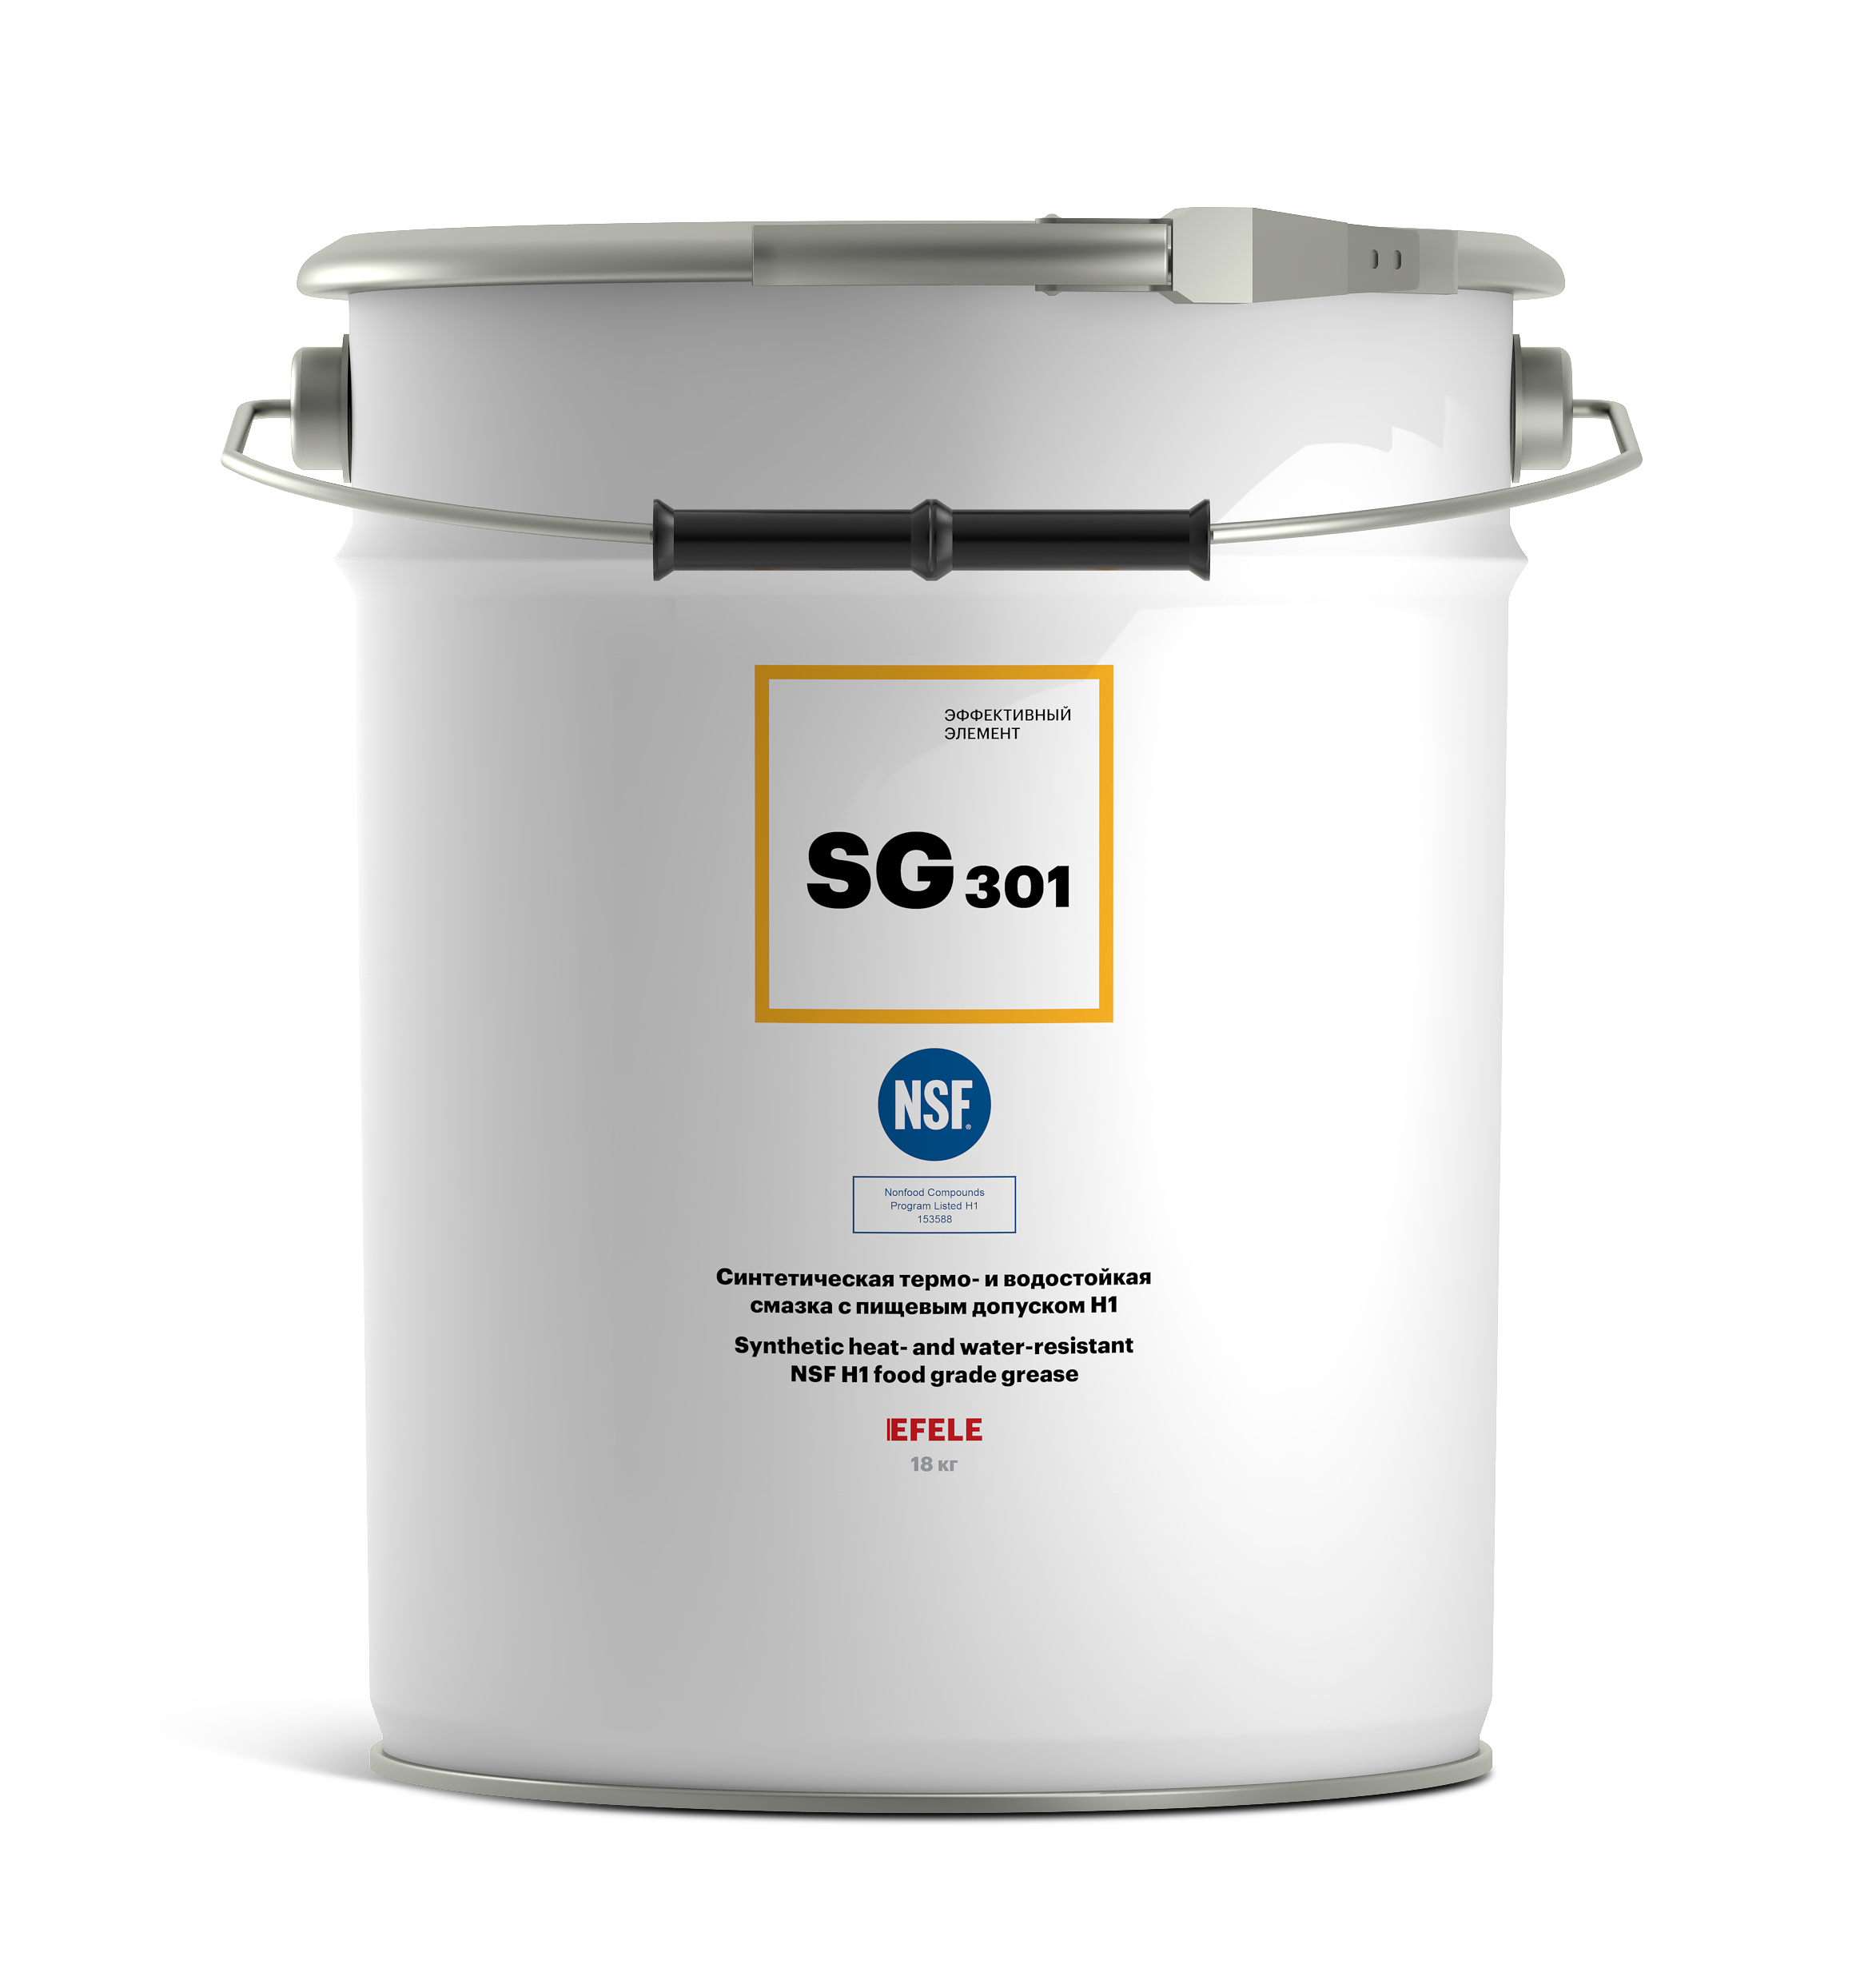 Термо- и водостойкая пластичная смазка EFELE SG-301 с пищевым допуском NSF H1 (18 кг)